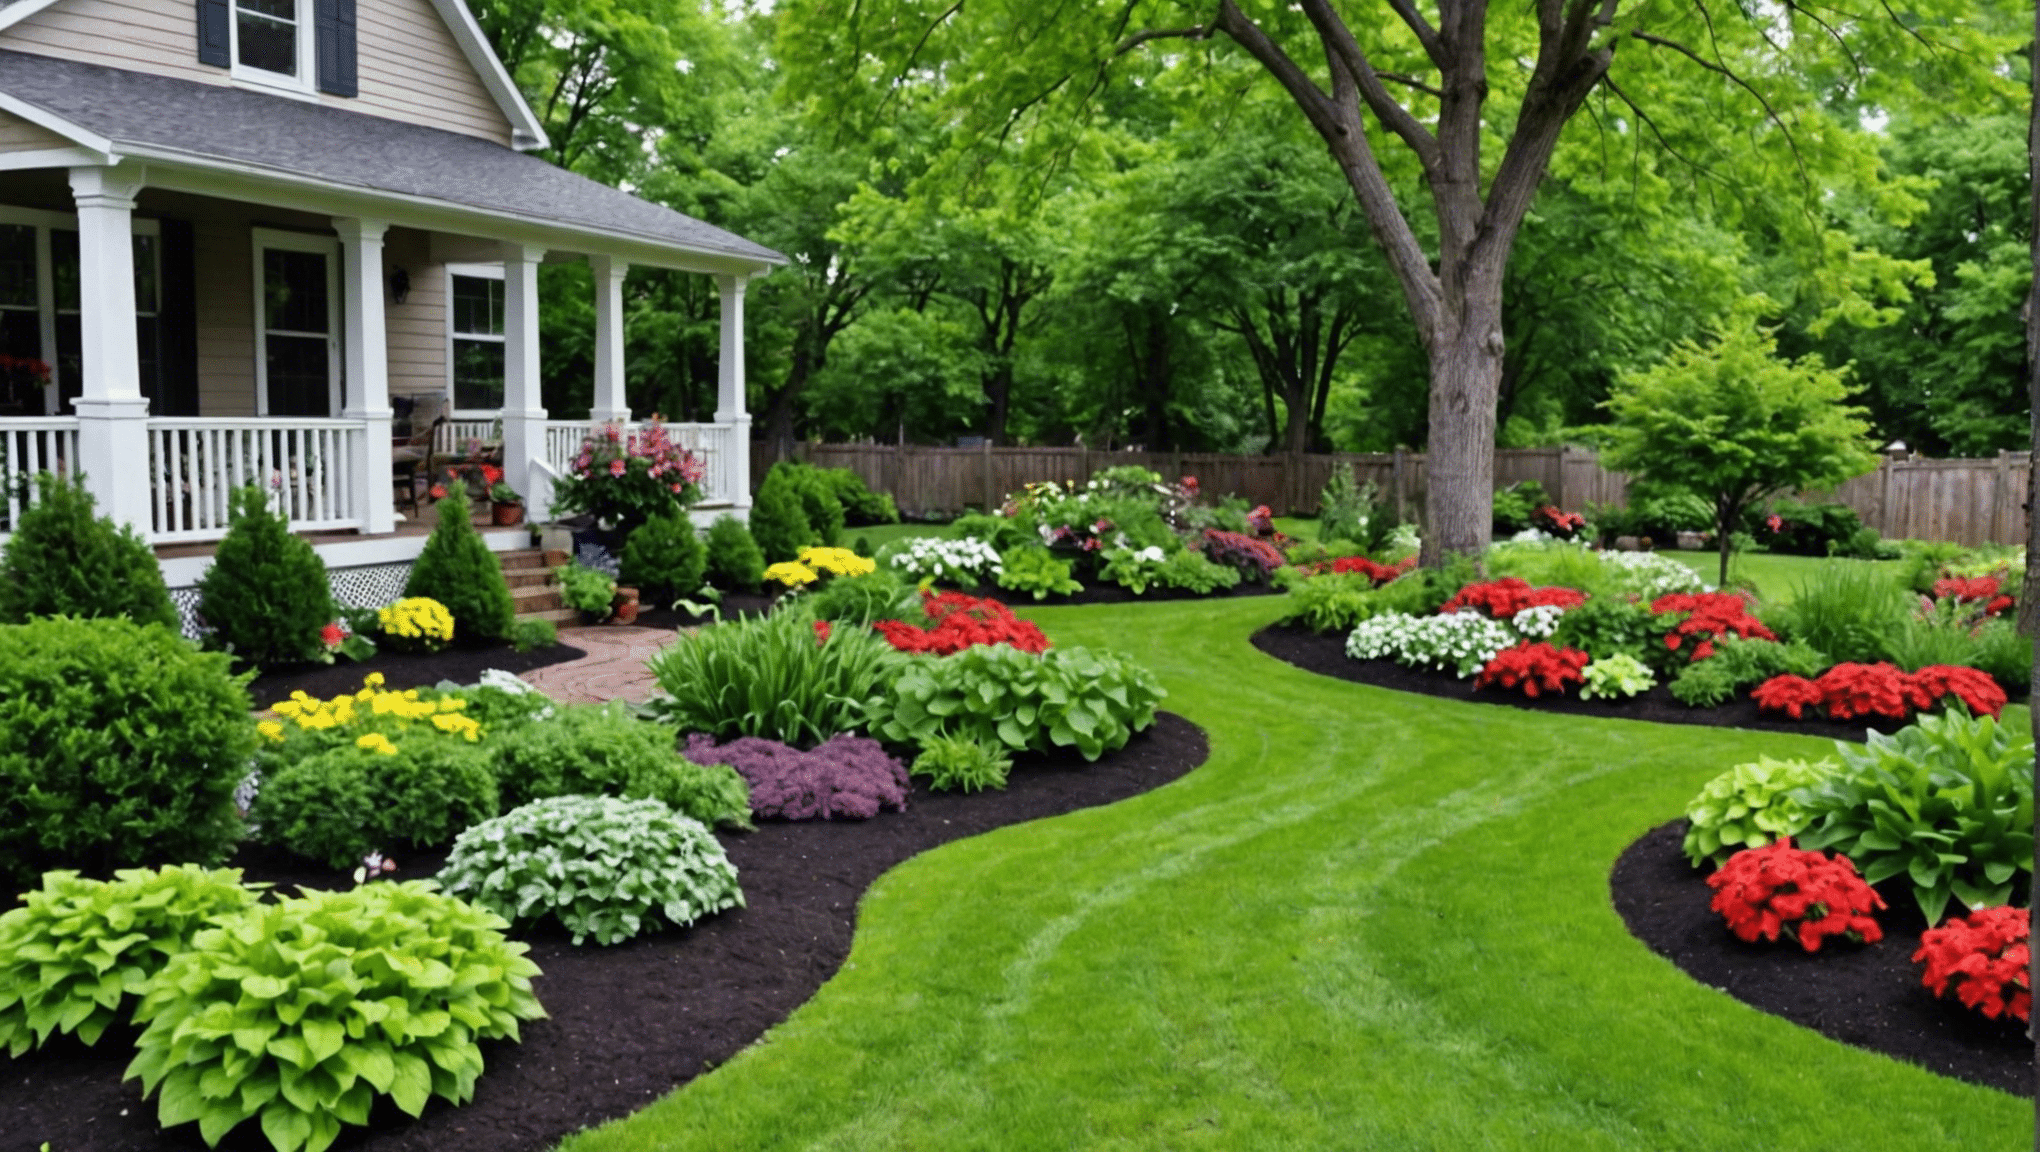 inšpirujte sa nápadmi na zeleninové záhradky pred záhradou, aby ste premenili svoj vonkajší priestor na bohatú a krásnu záhradu.